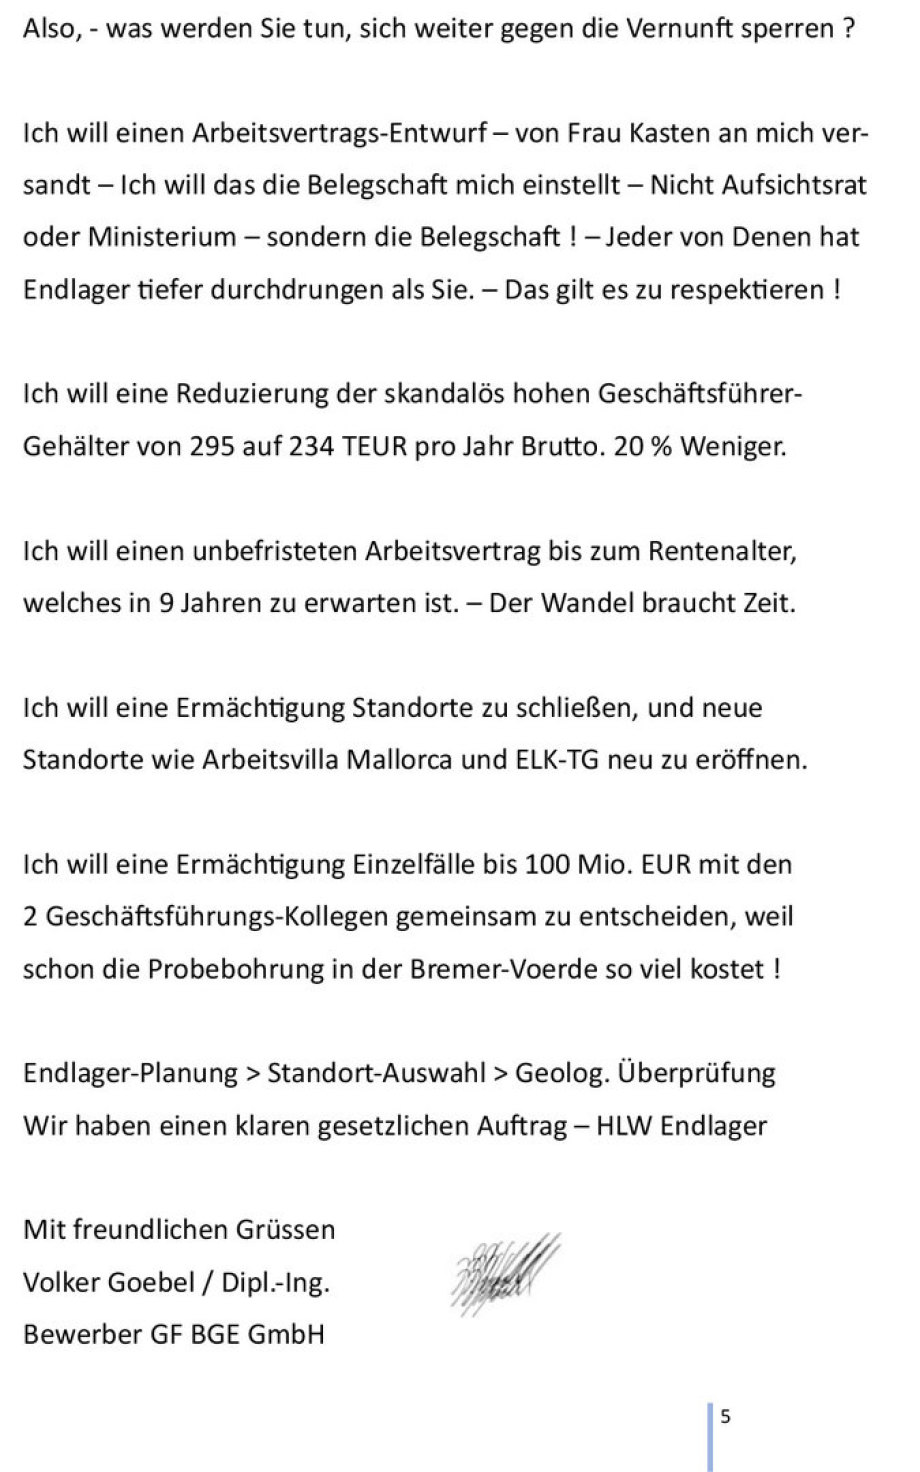 5von5 Entscheidender Brief an den BGE GmbH Aufsichtsrat - Verfasser ist der GF Stellen-Bewerber Volker Goebel Dipl.- Ing.